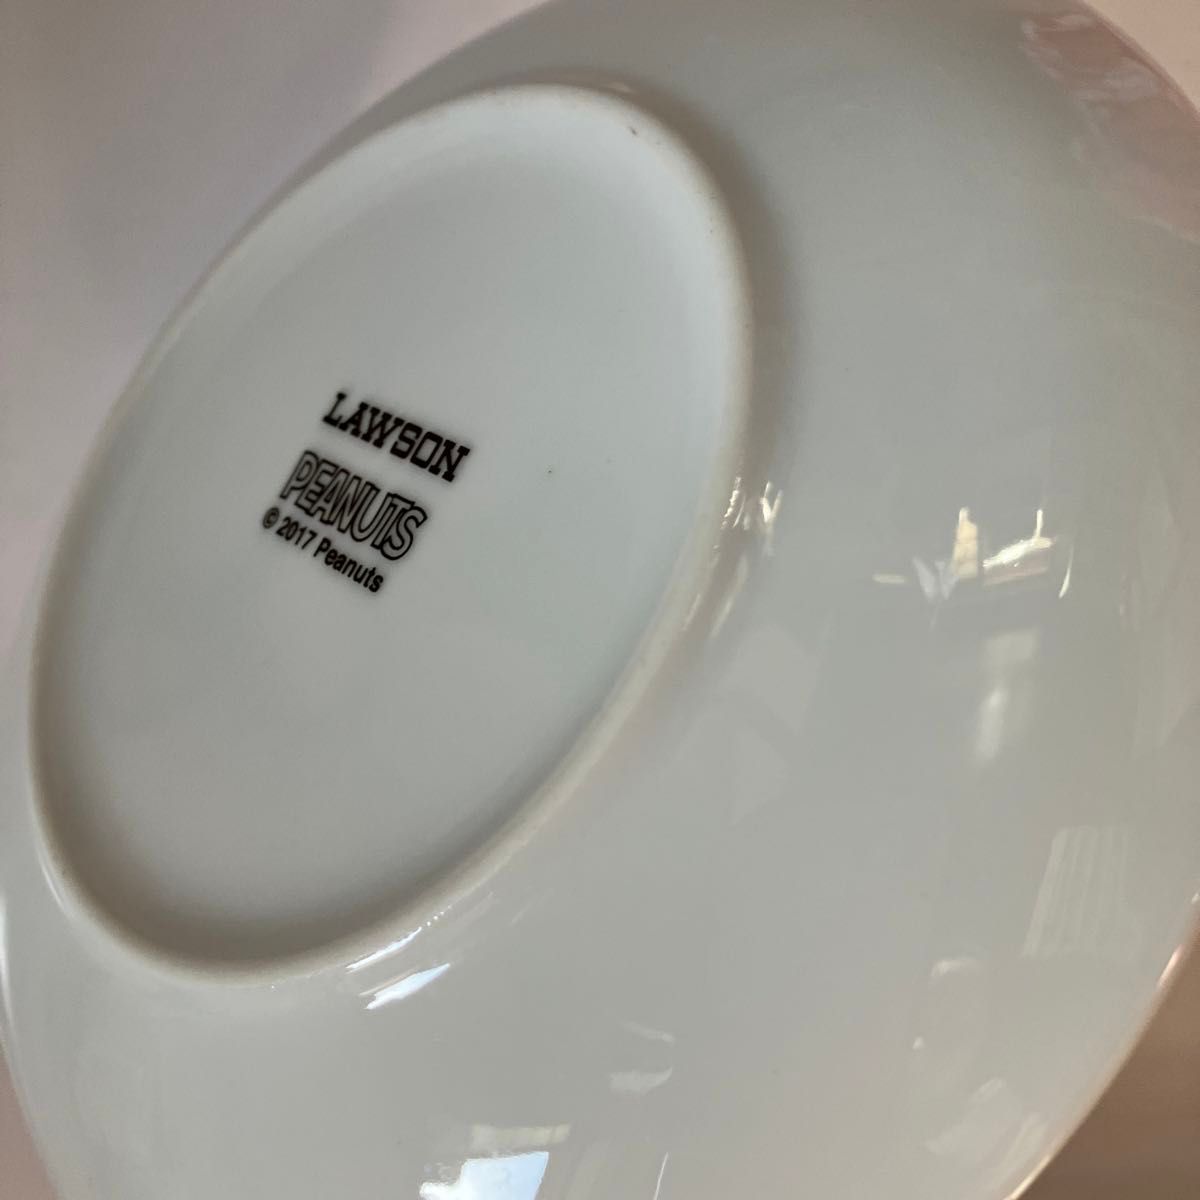 新品 未使用 6枚セット 2柄 スヌーピー 陶器製の皿  ペアプレート 直径約15.5cm 